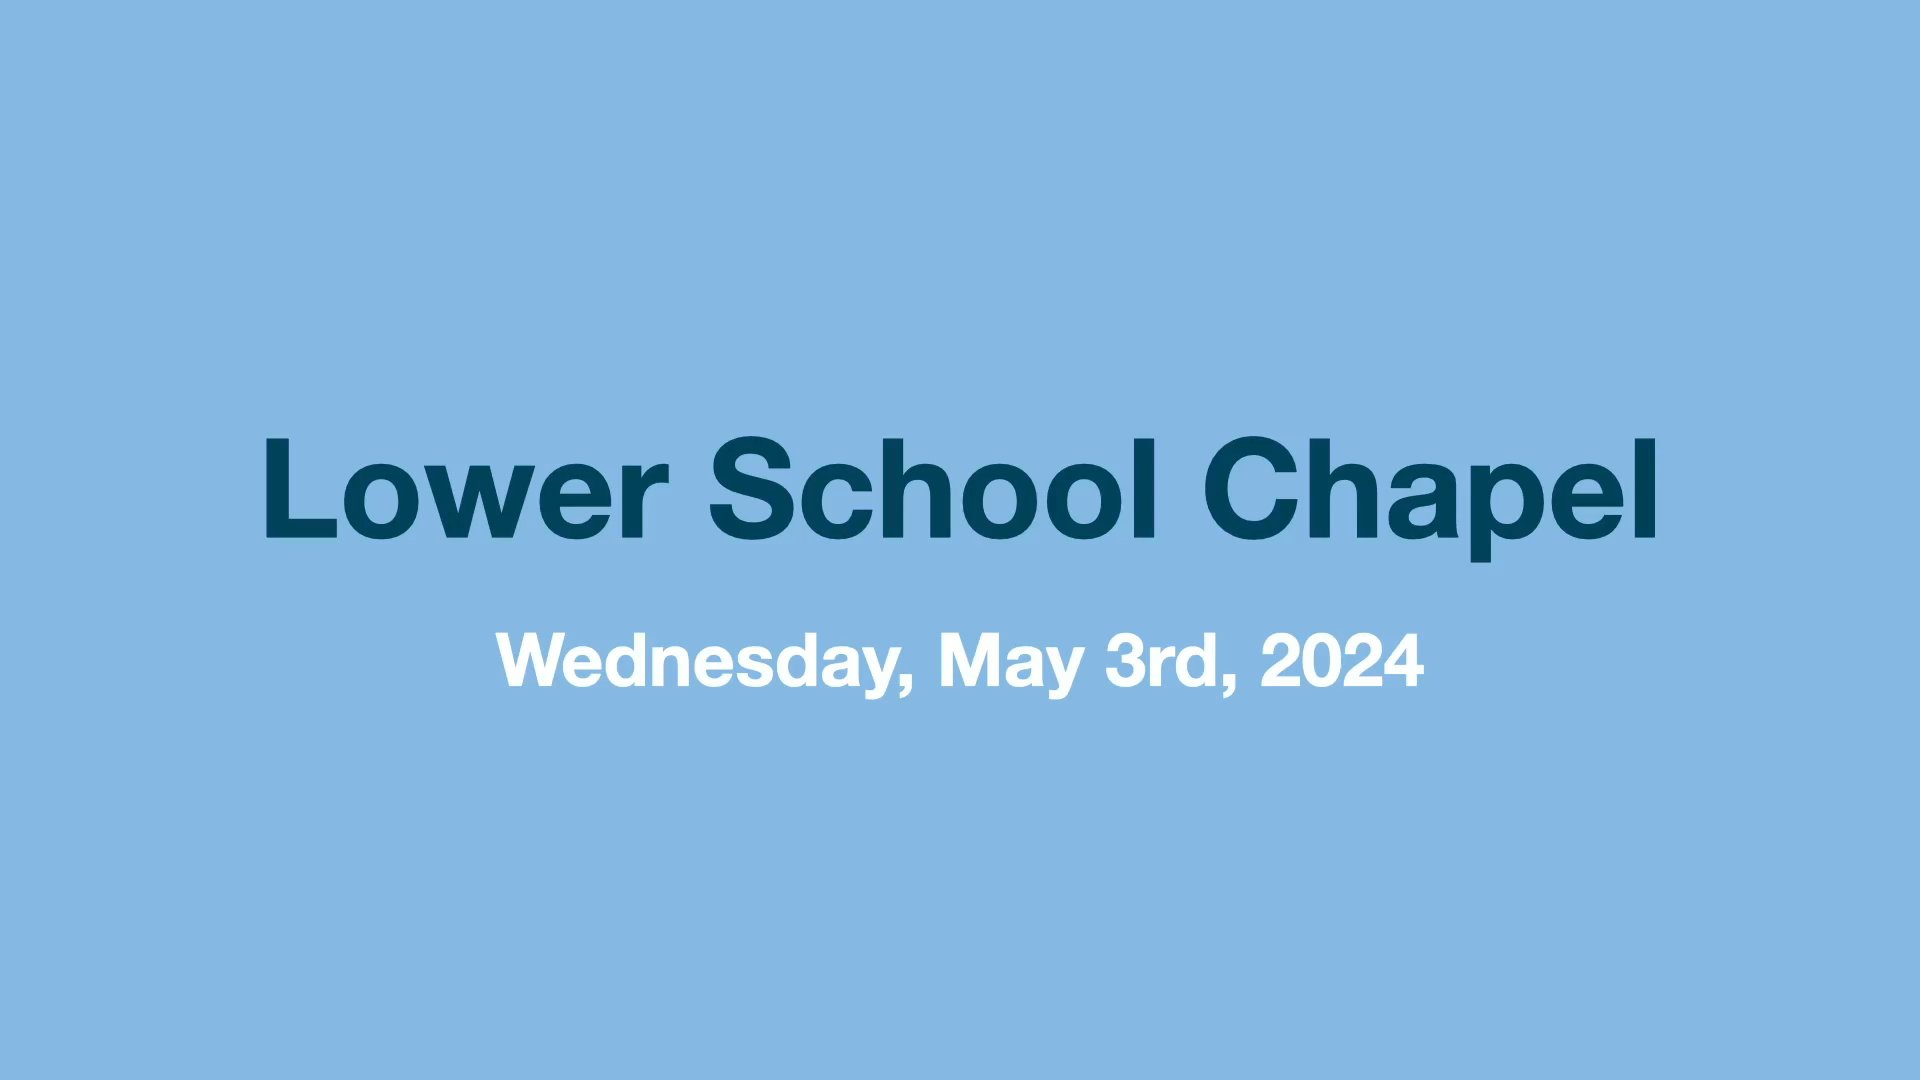 Lower School Chapel - 05-01-24